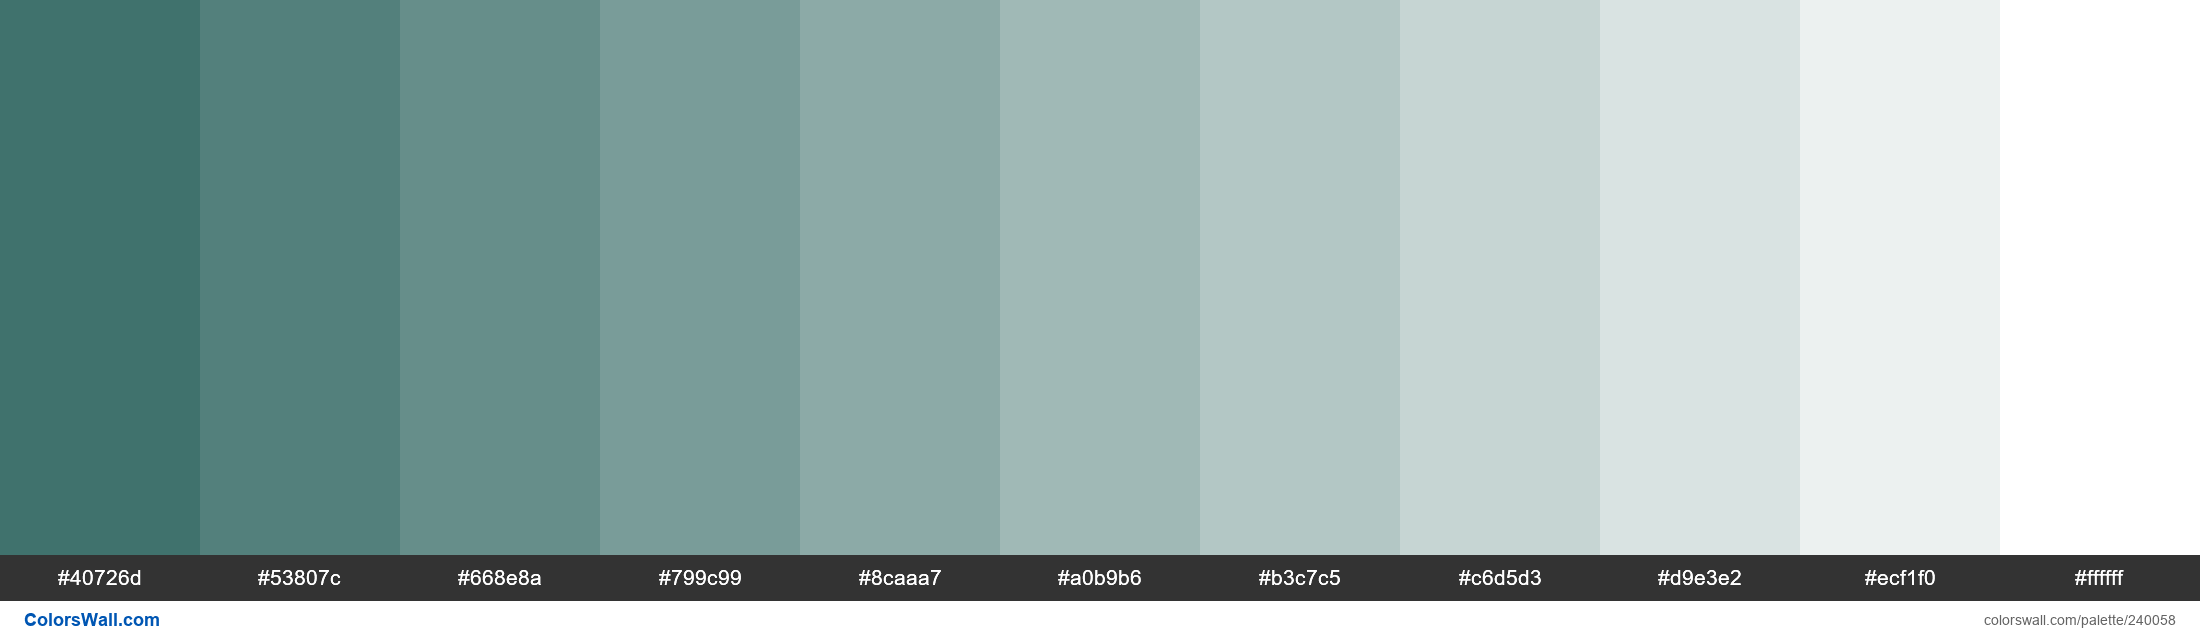 Jade paleta de colores #40726d, #53807c, #668e8a - ColorsWall